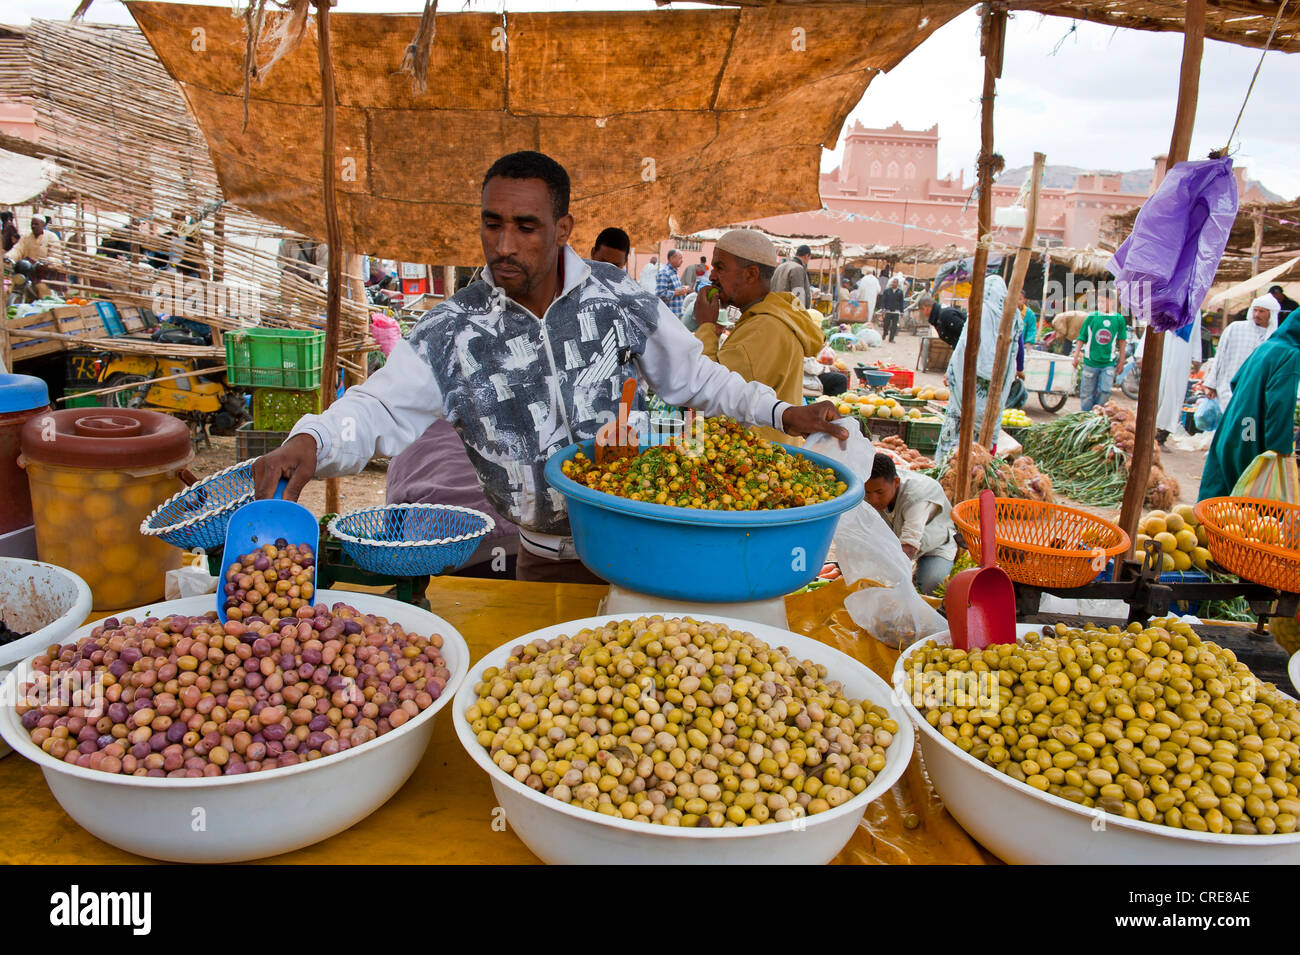 Marktstand auf einem Souk oder Basar, junger Mann bietet verschiedene Arten von Oliven in großen Schüsseln, Zagora, Draa-Tal, Marokko Stockfoto